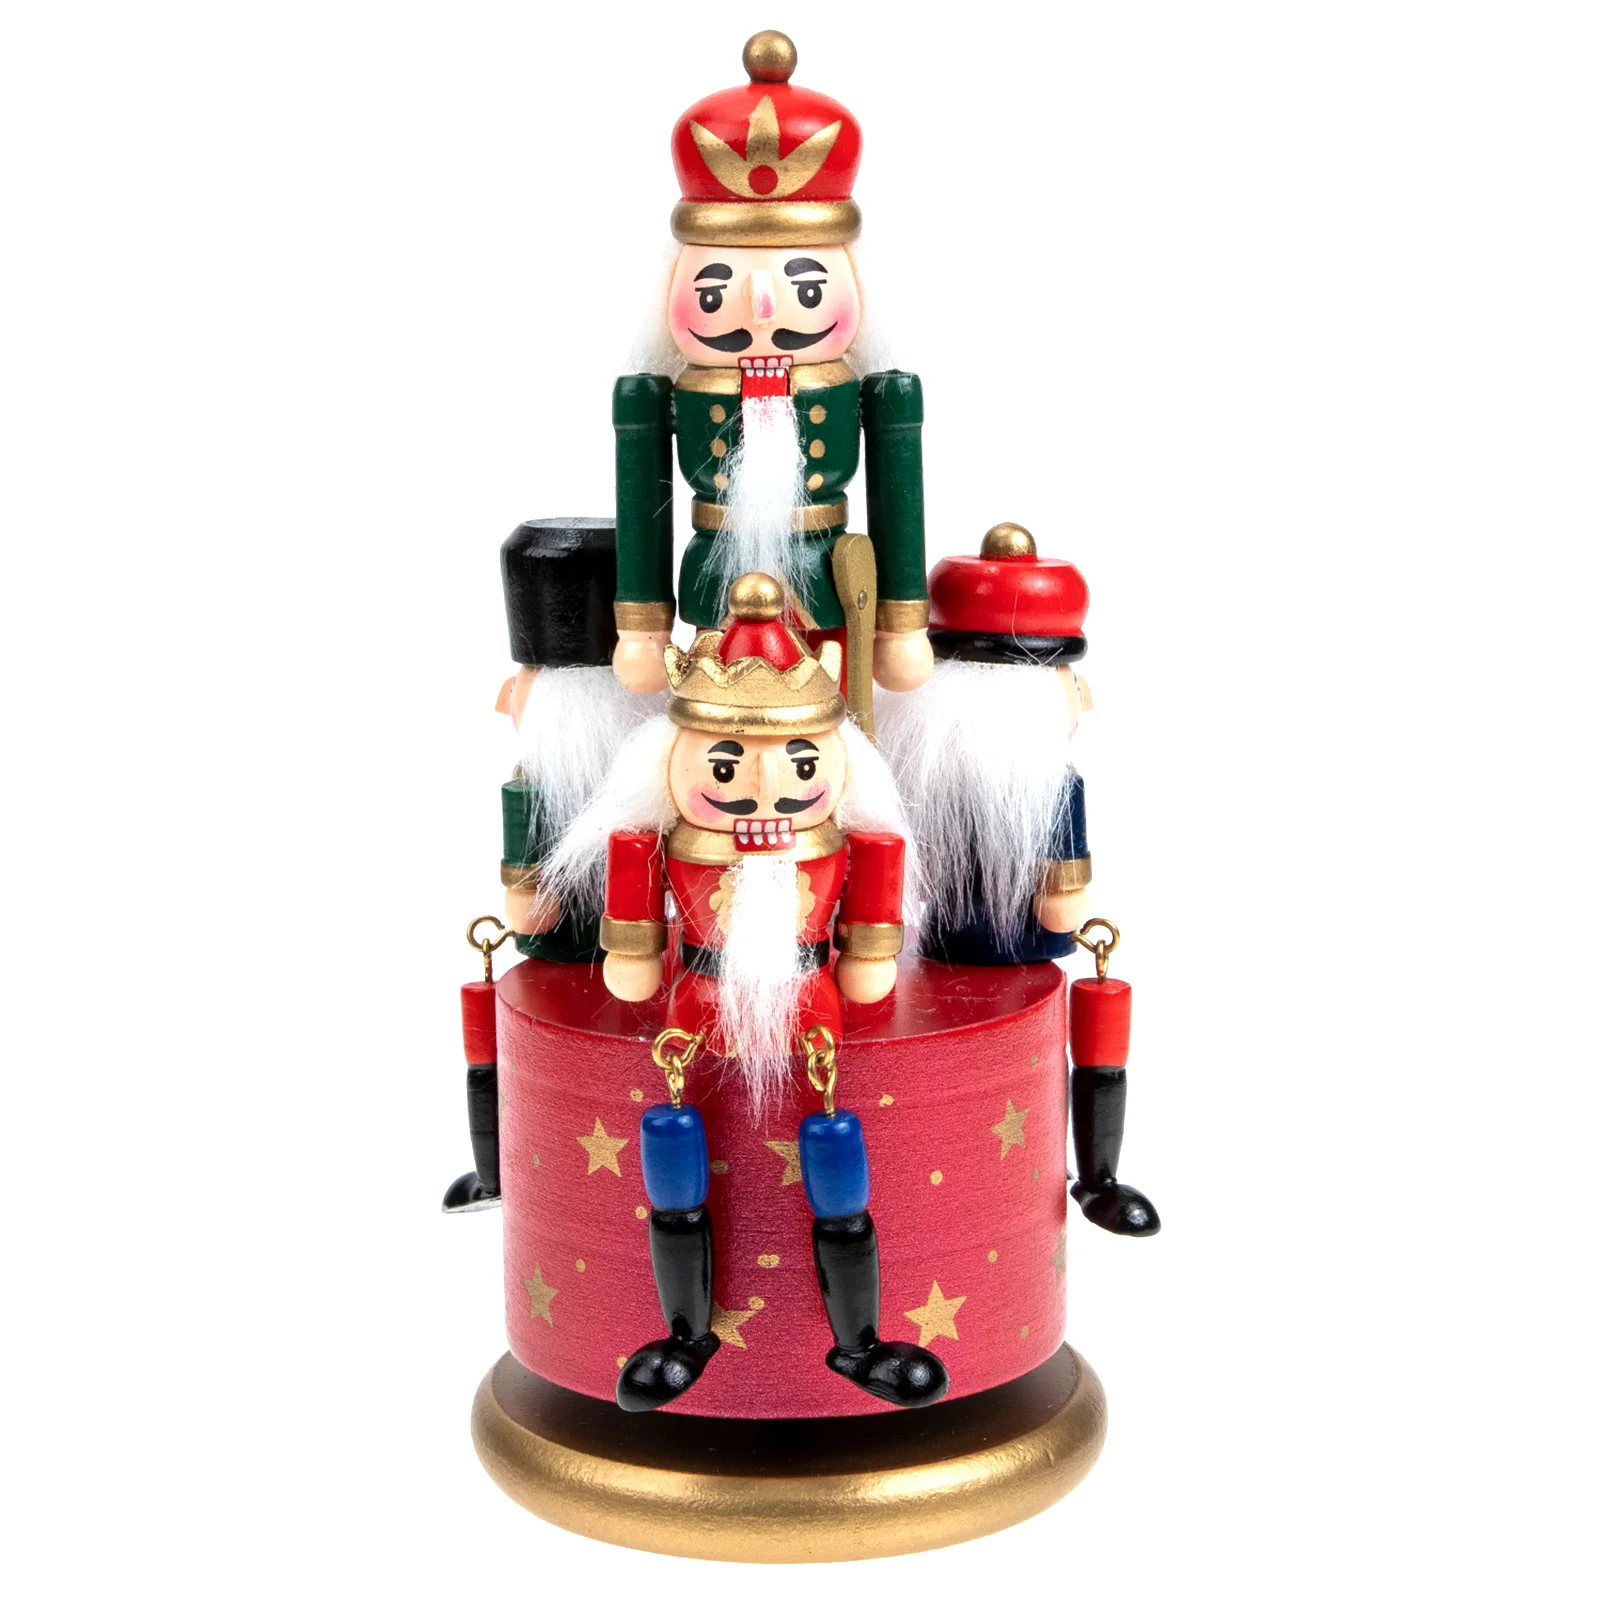 

Европейская Музыкальная шкатулка с ручной росписью, Рождественская музыкальная шкатулка, фигурка, вращающаяся музыкальная шкатулка, рождественские настольные украшения, 20,5X9 см